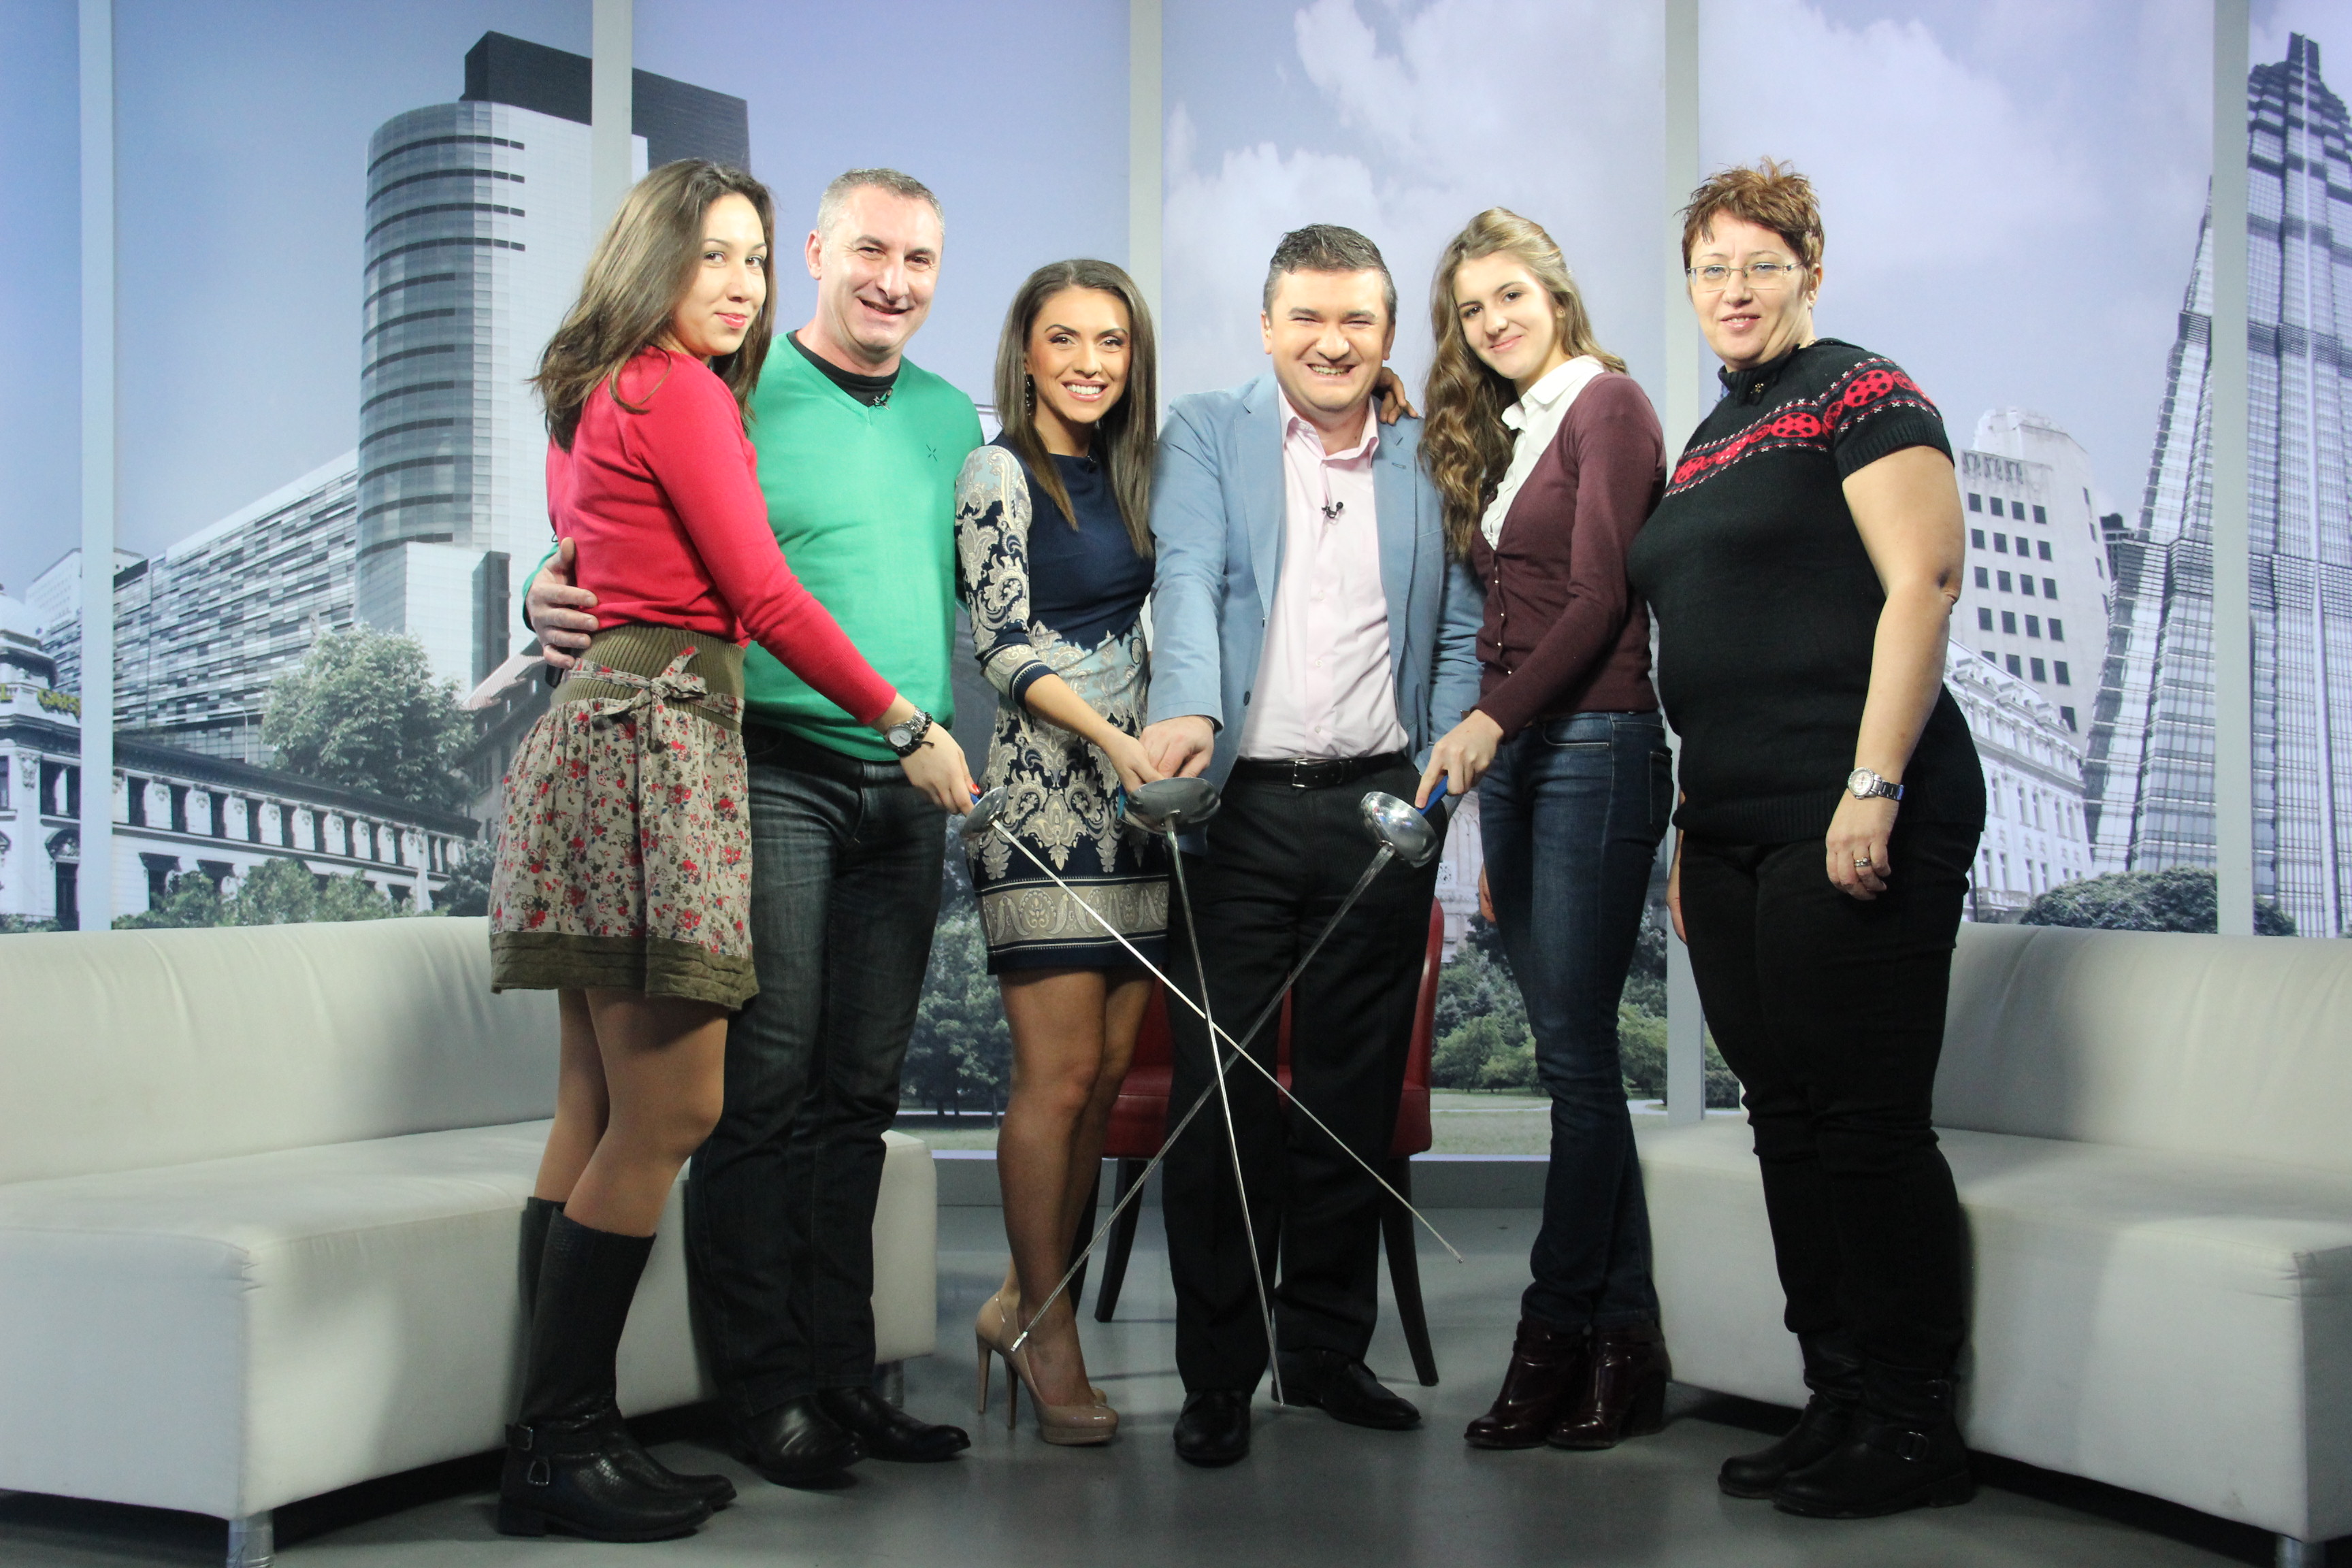 GALERIE FOTO: Mălina Călugăreanu și Alexandra Predescu au fost invitate luni la emisiunea Dimineața de știri de la Realitatea TV